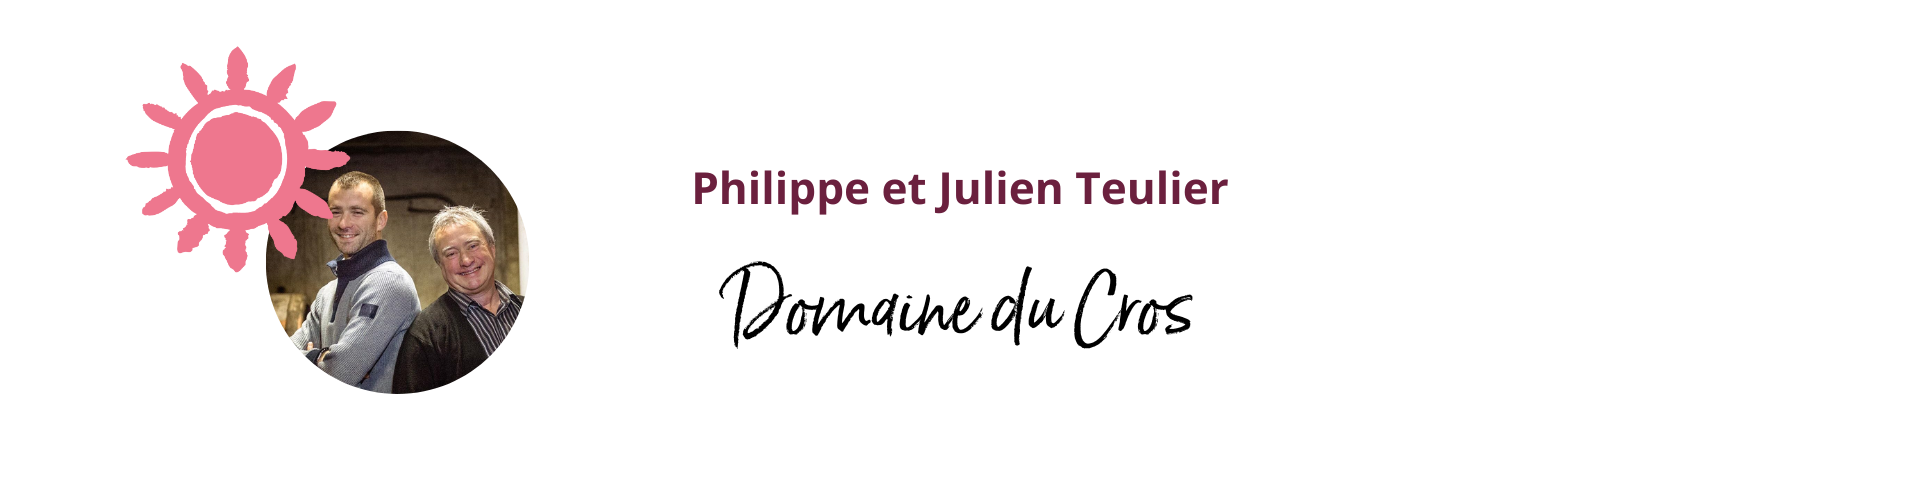 Domaine du Cros - Philippe et Julien TEULIER